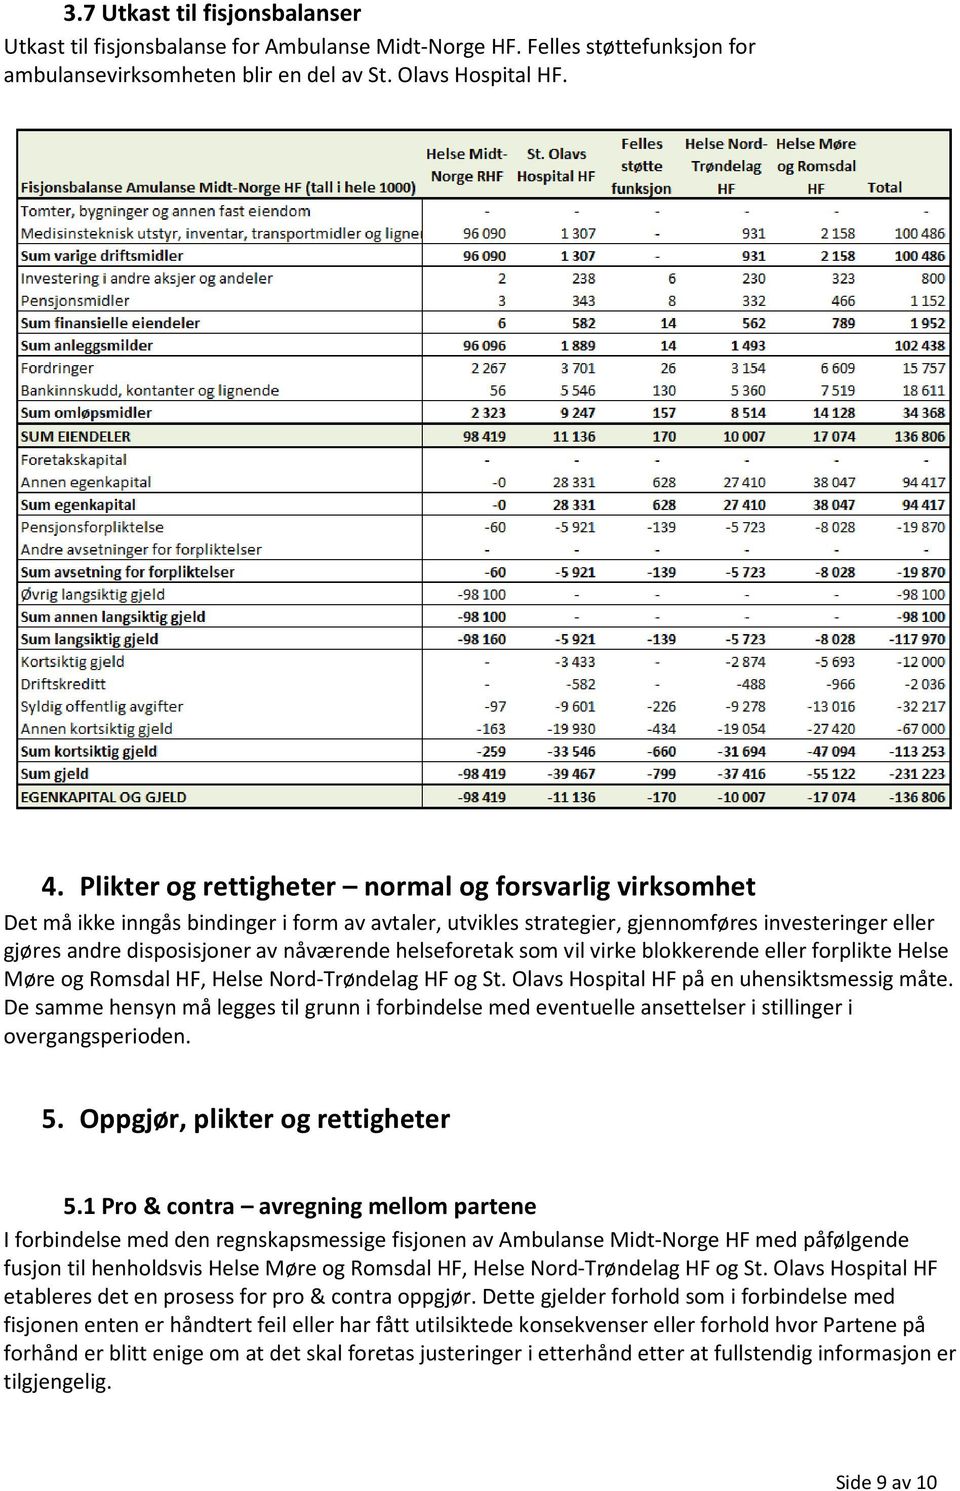 helseforetak som vil virke blokkerende eller forplikte Helse Møre og Romsdal HF, Helse Nord-Trøndelag HF og St. Olavs Hospital HF på en uhensiktsmessig måte.